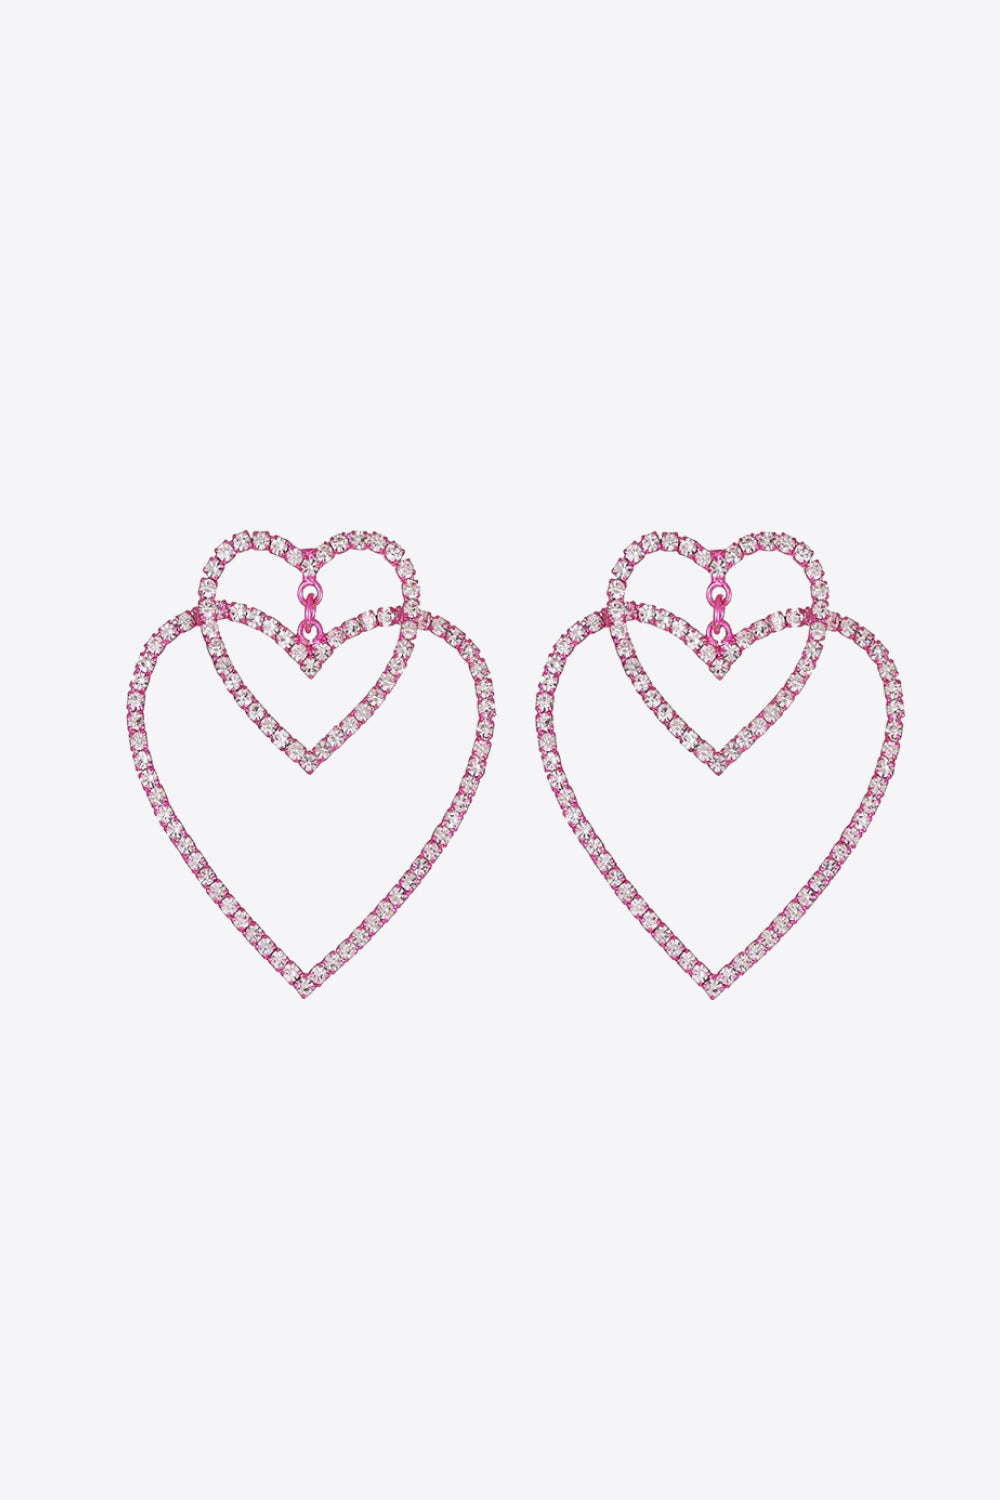 Glass Stone Decor Heart Copper Earrings - Earrings - FITGGINS